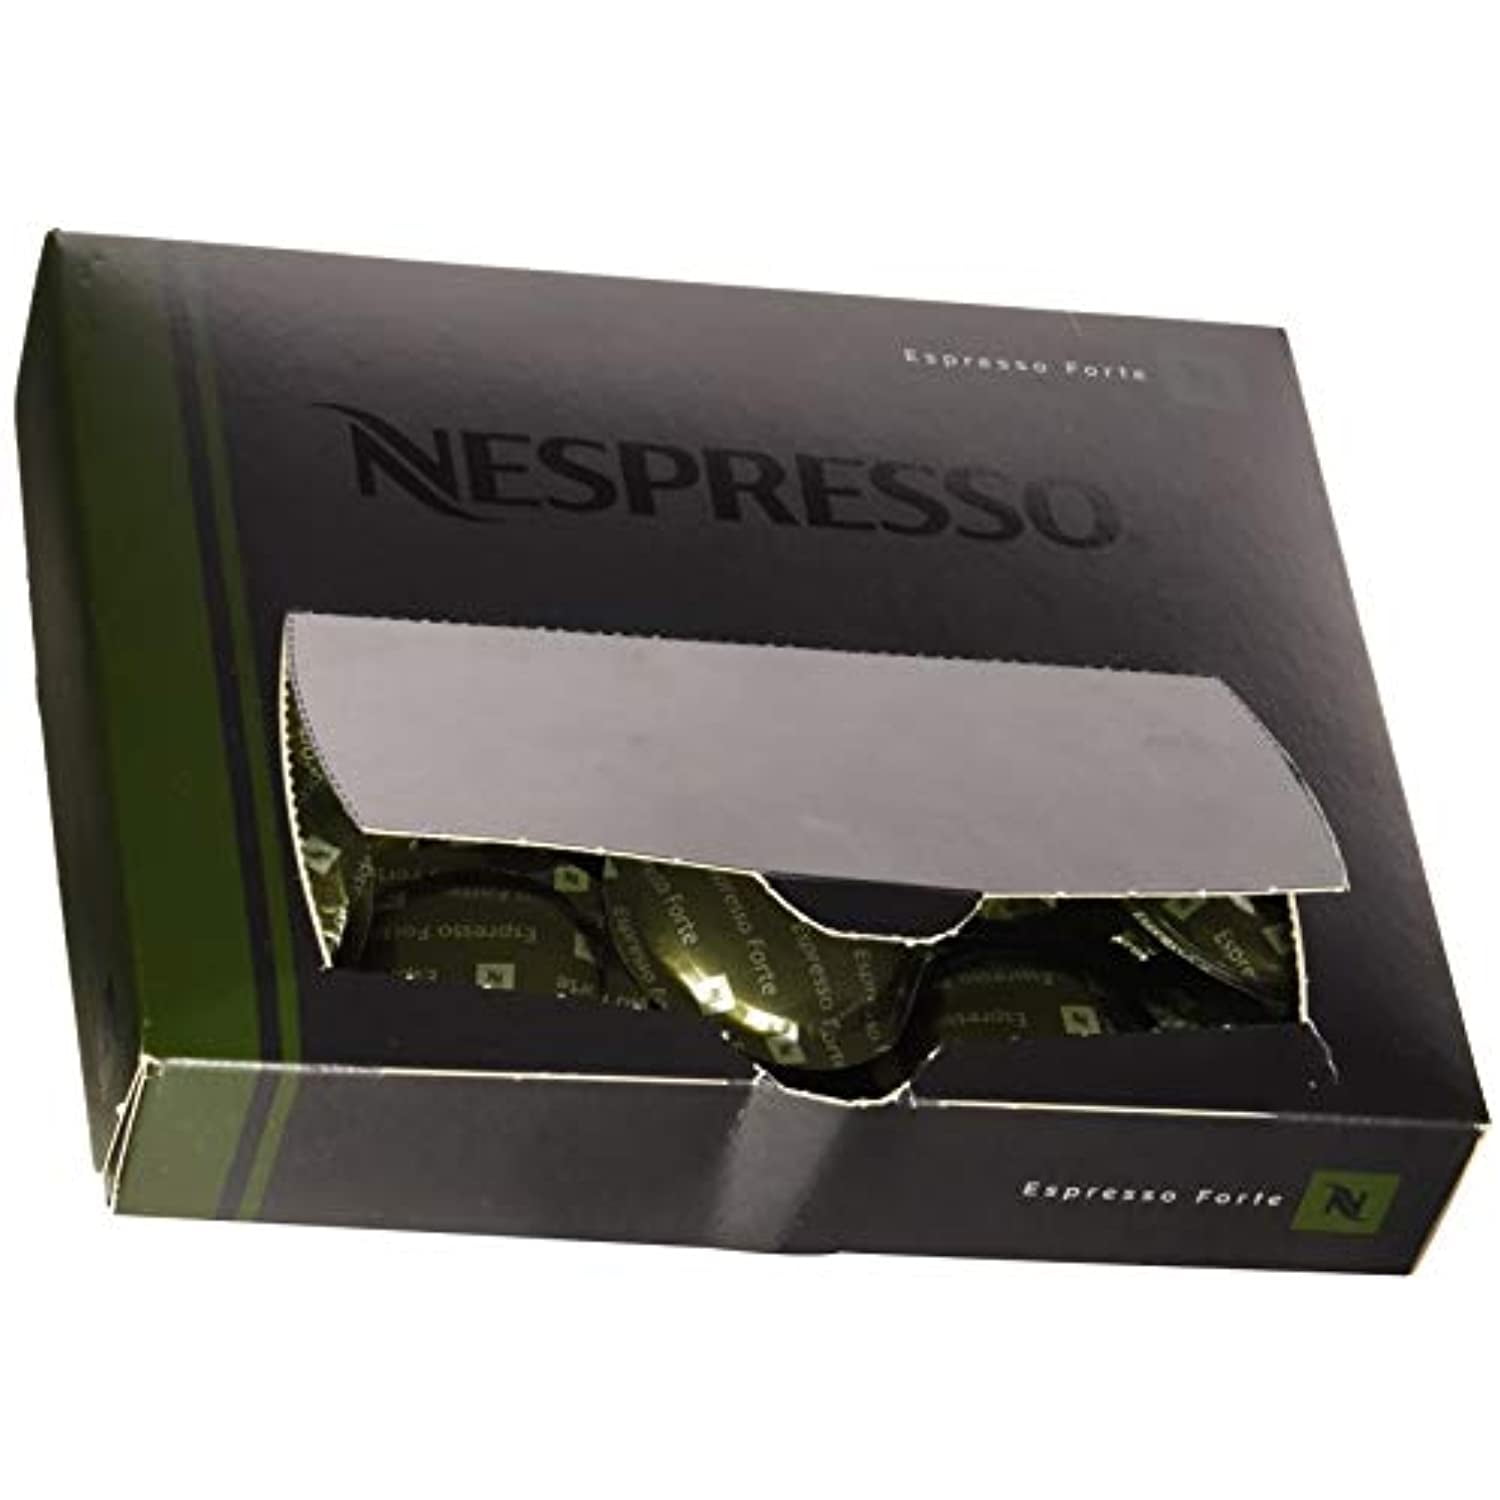 Café Royal Espresso Forte BIO - 50 Capsules pour Nespresso Pro à